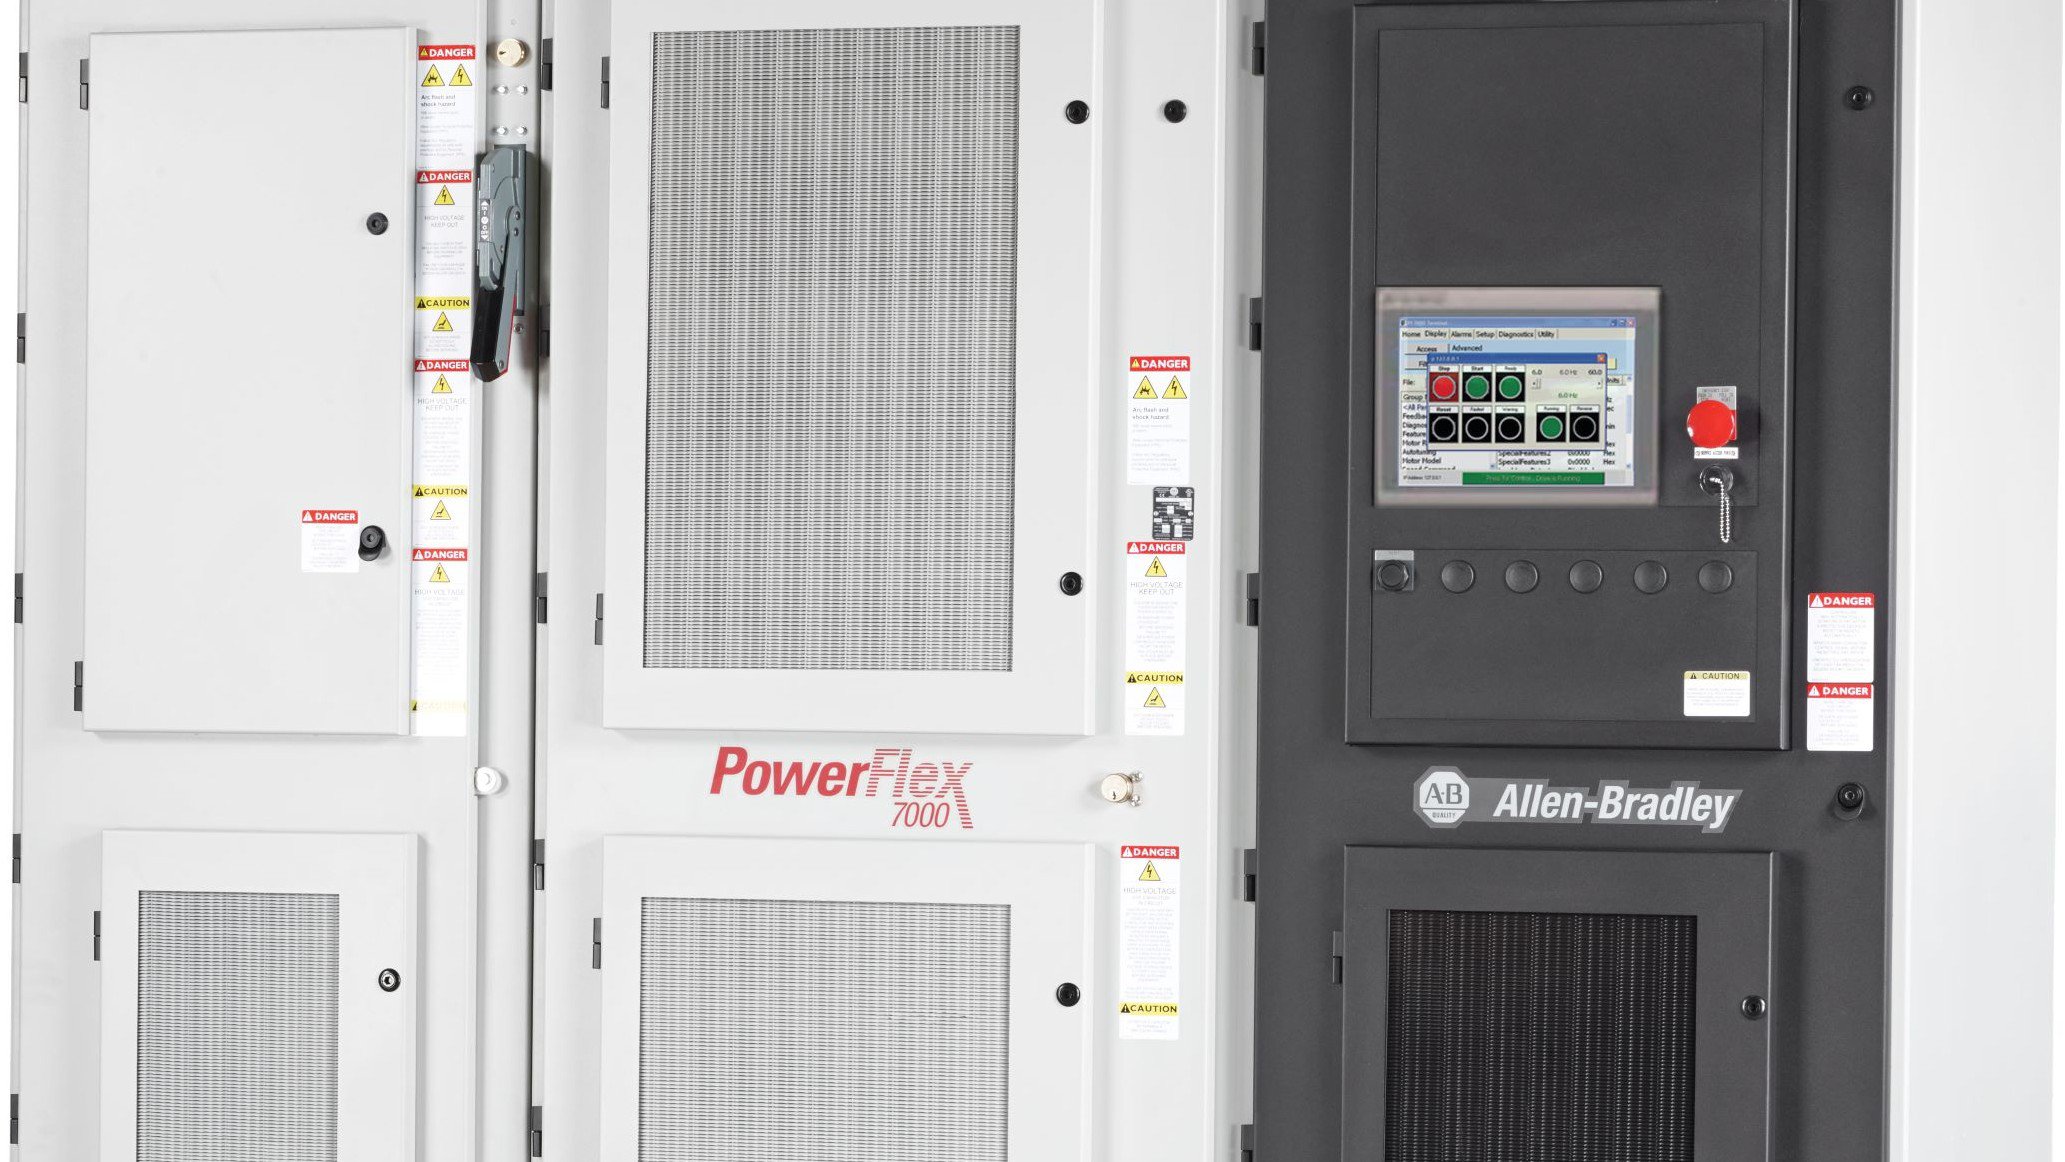 Allen-Bradley tall grey and black multiple door industrial cabinet housing medium voltage PowerFlex VFDs